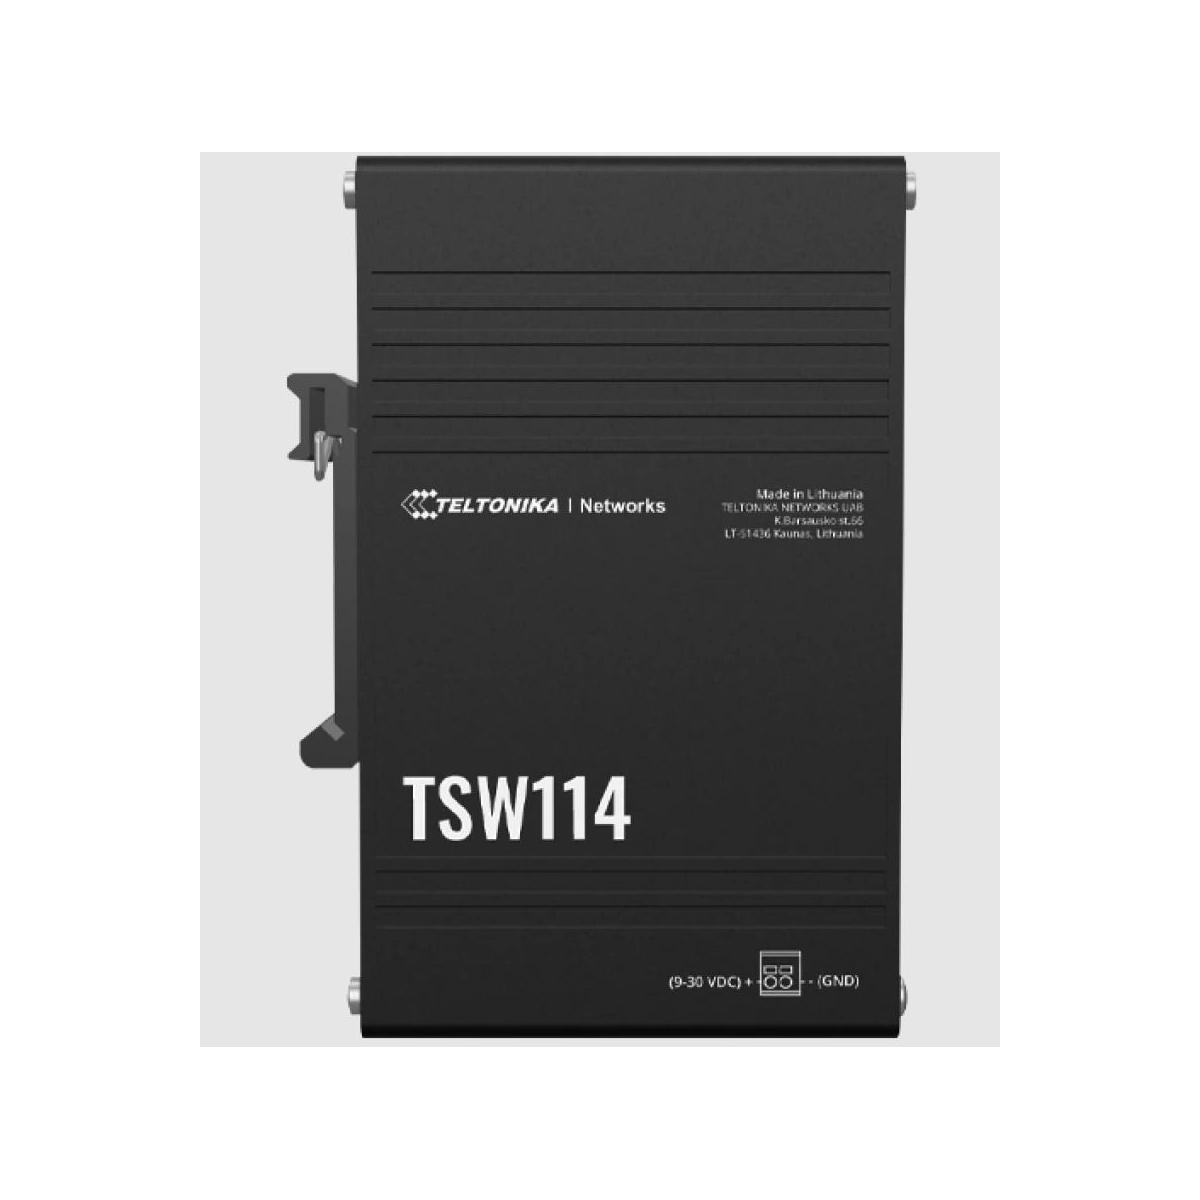 TELTONIKA Switch TSW114 6